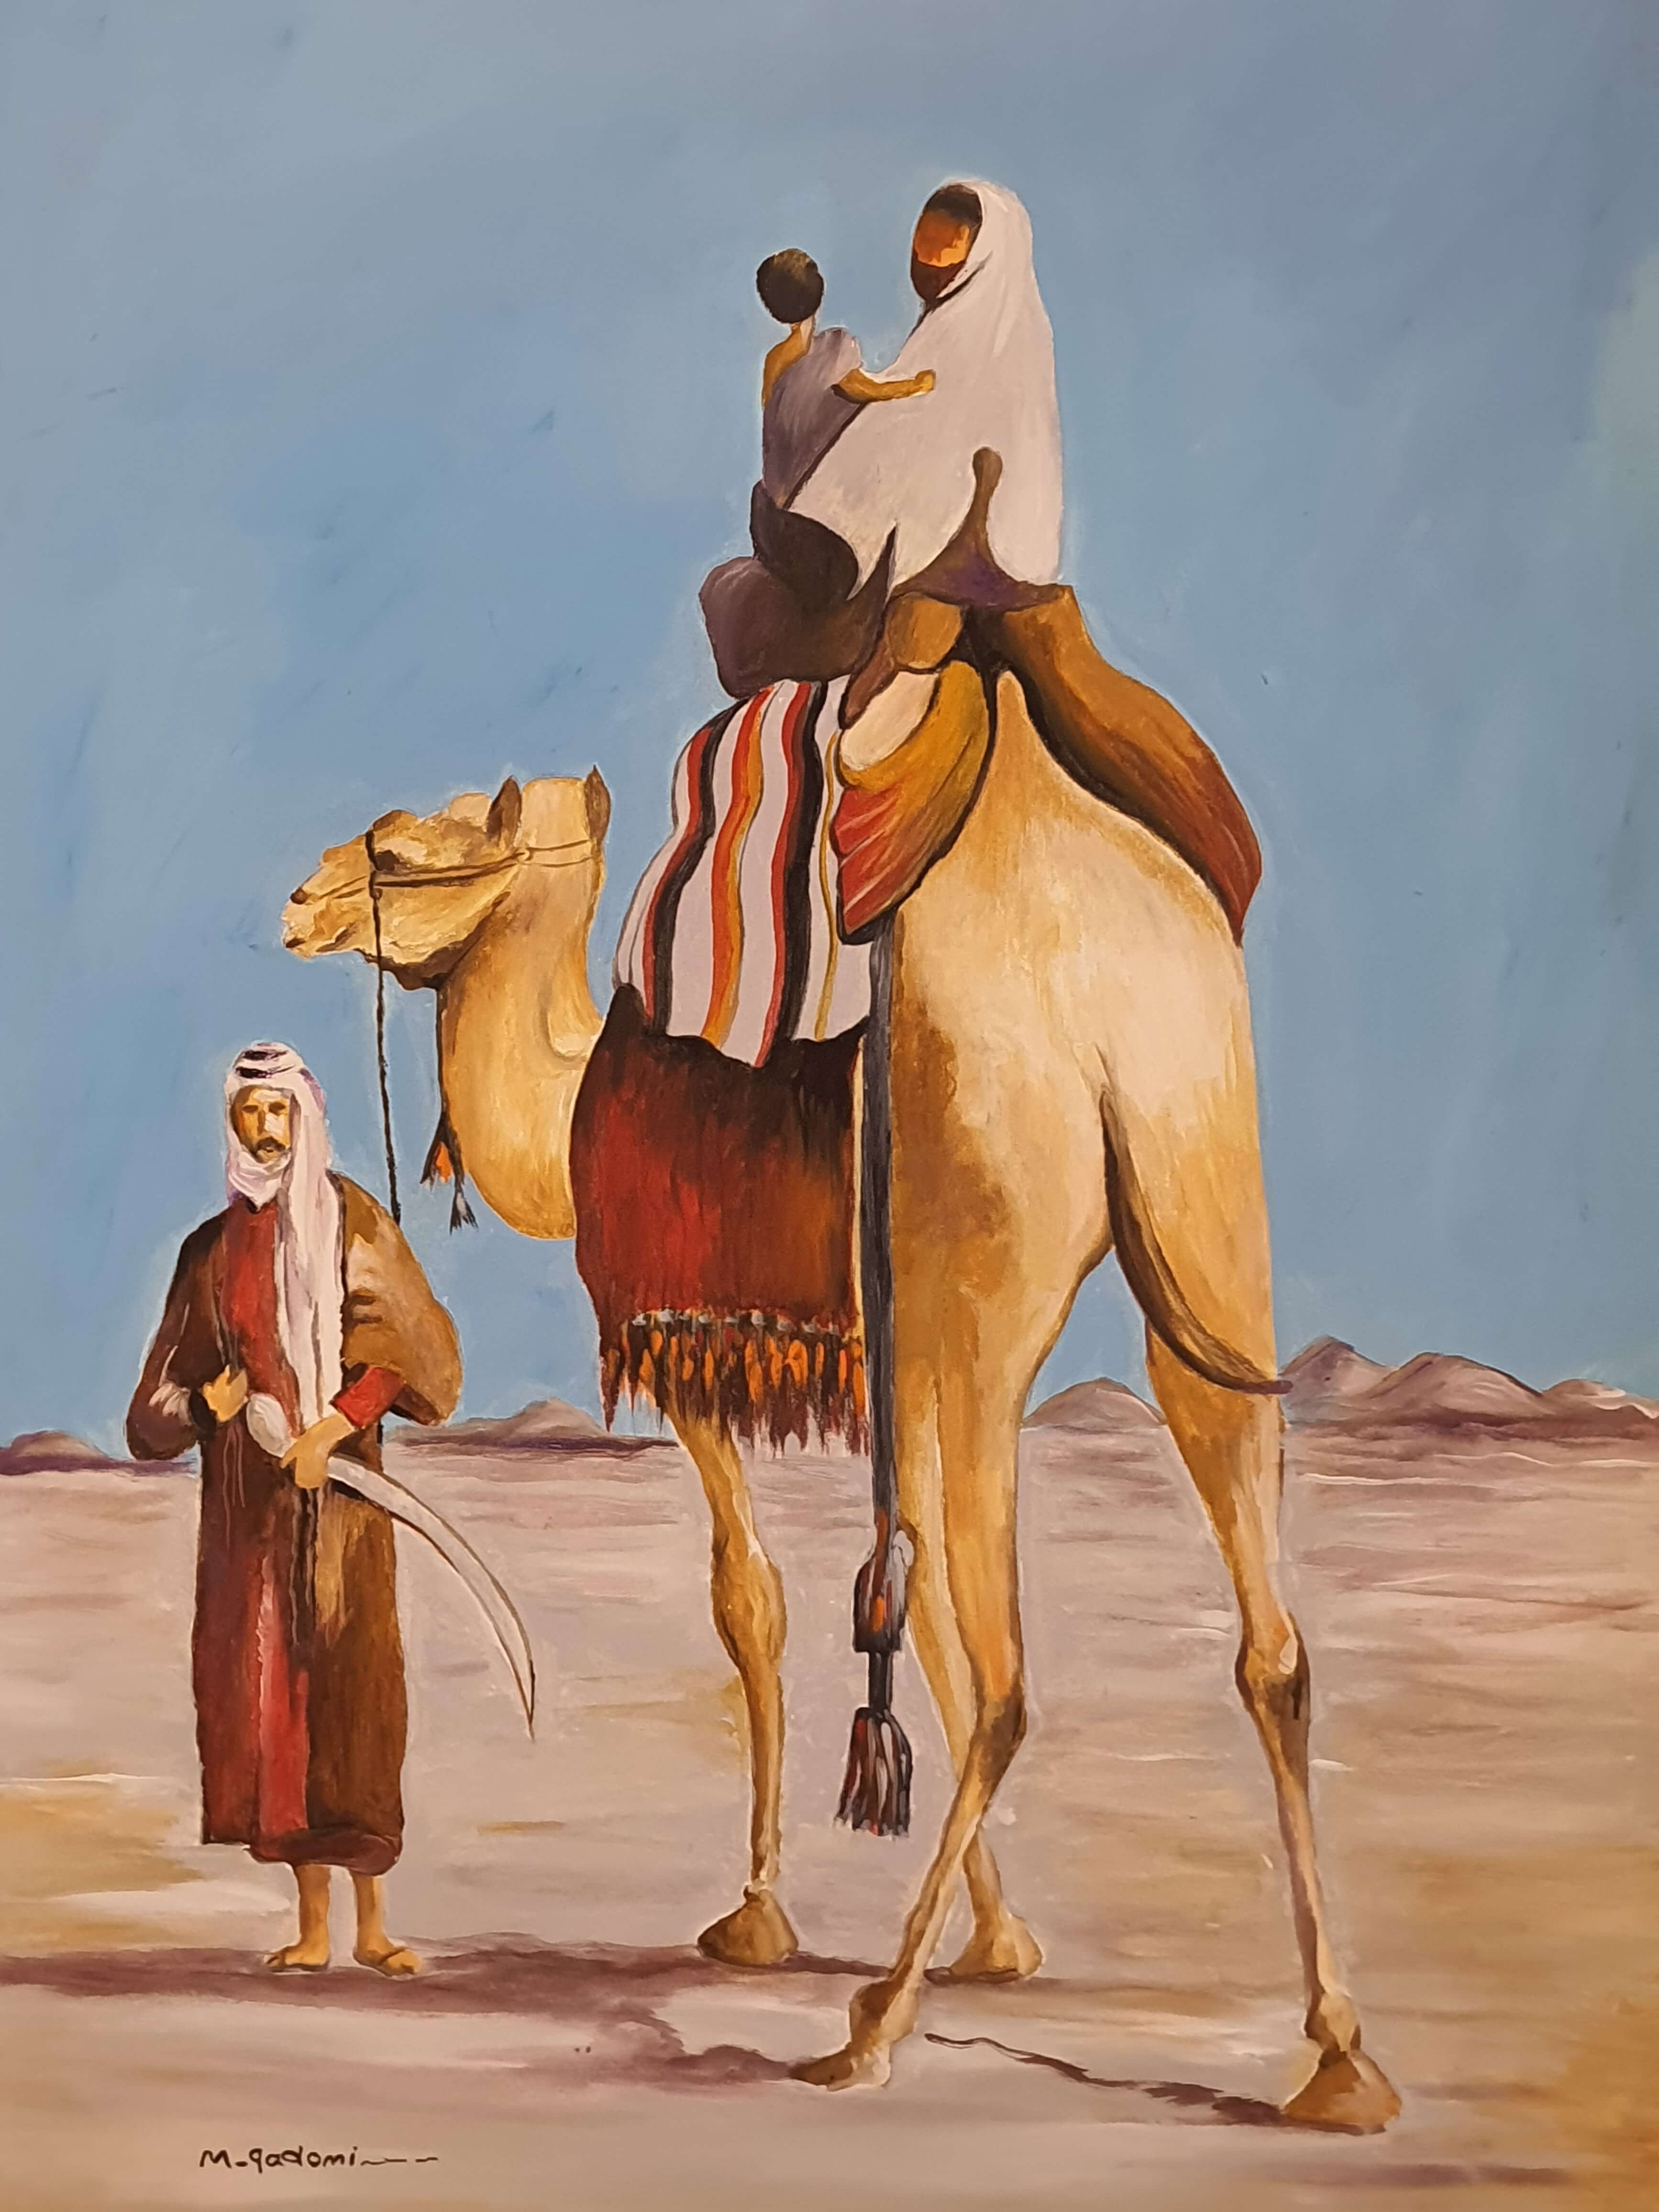 Bedouin-البدو